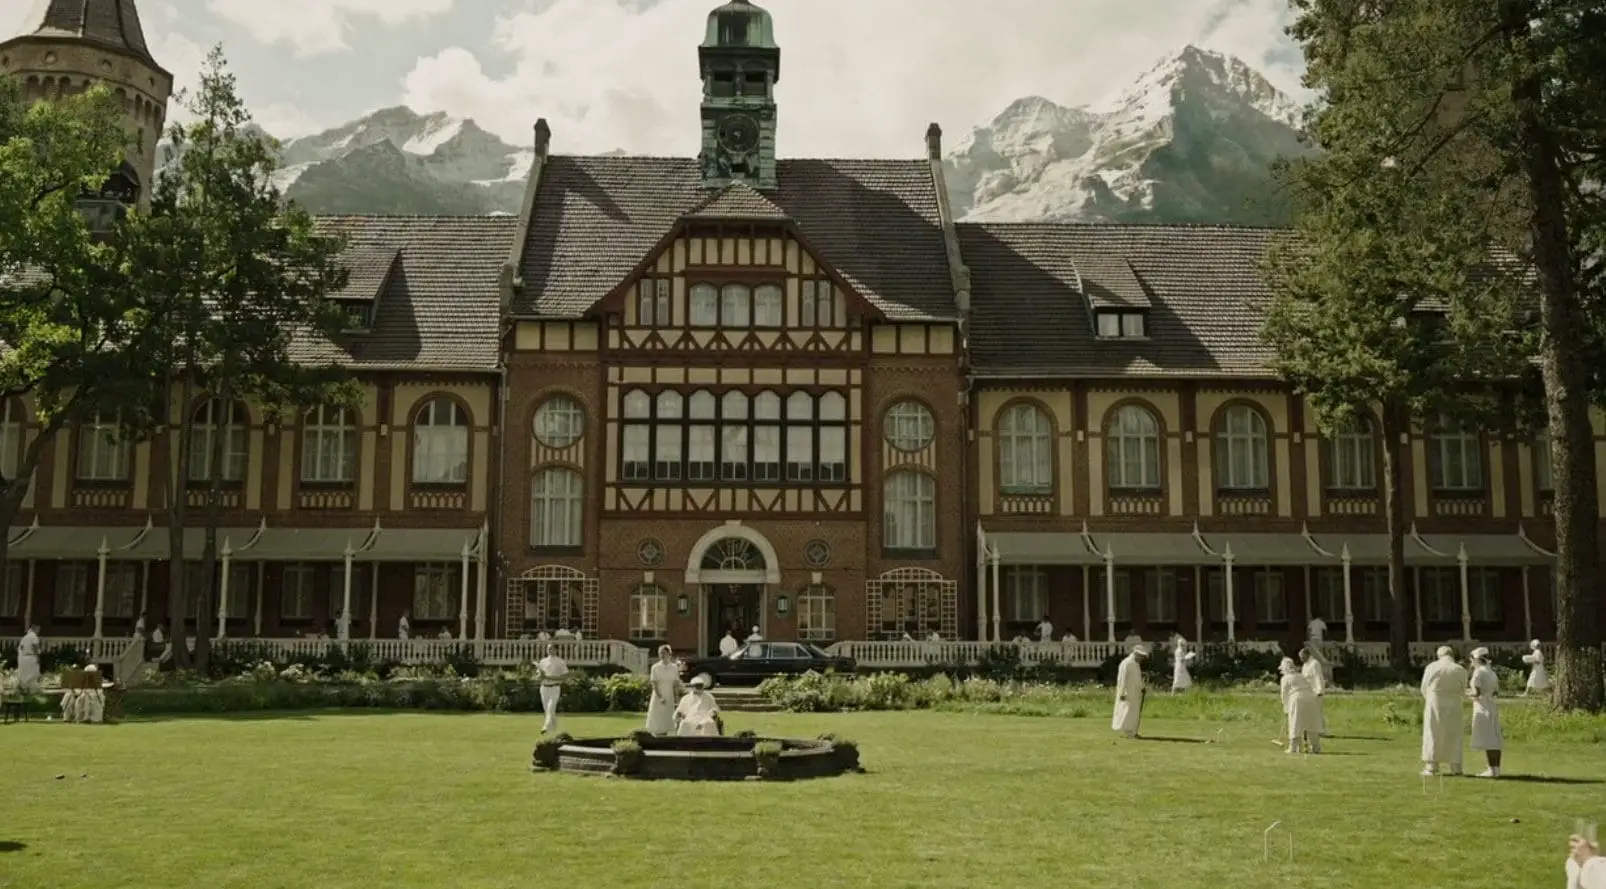 Sanatorium for the rich in the Alps